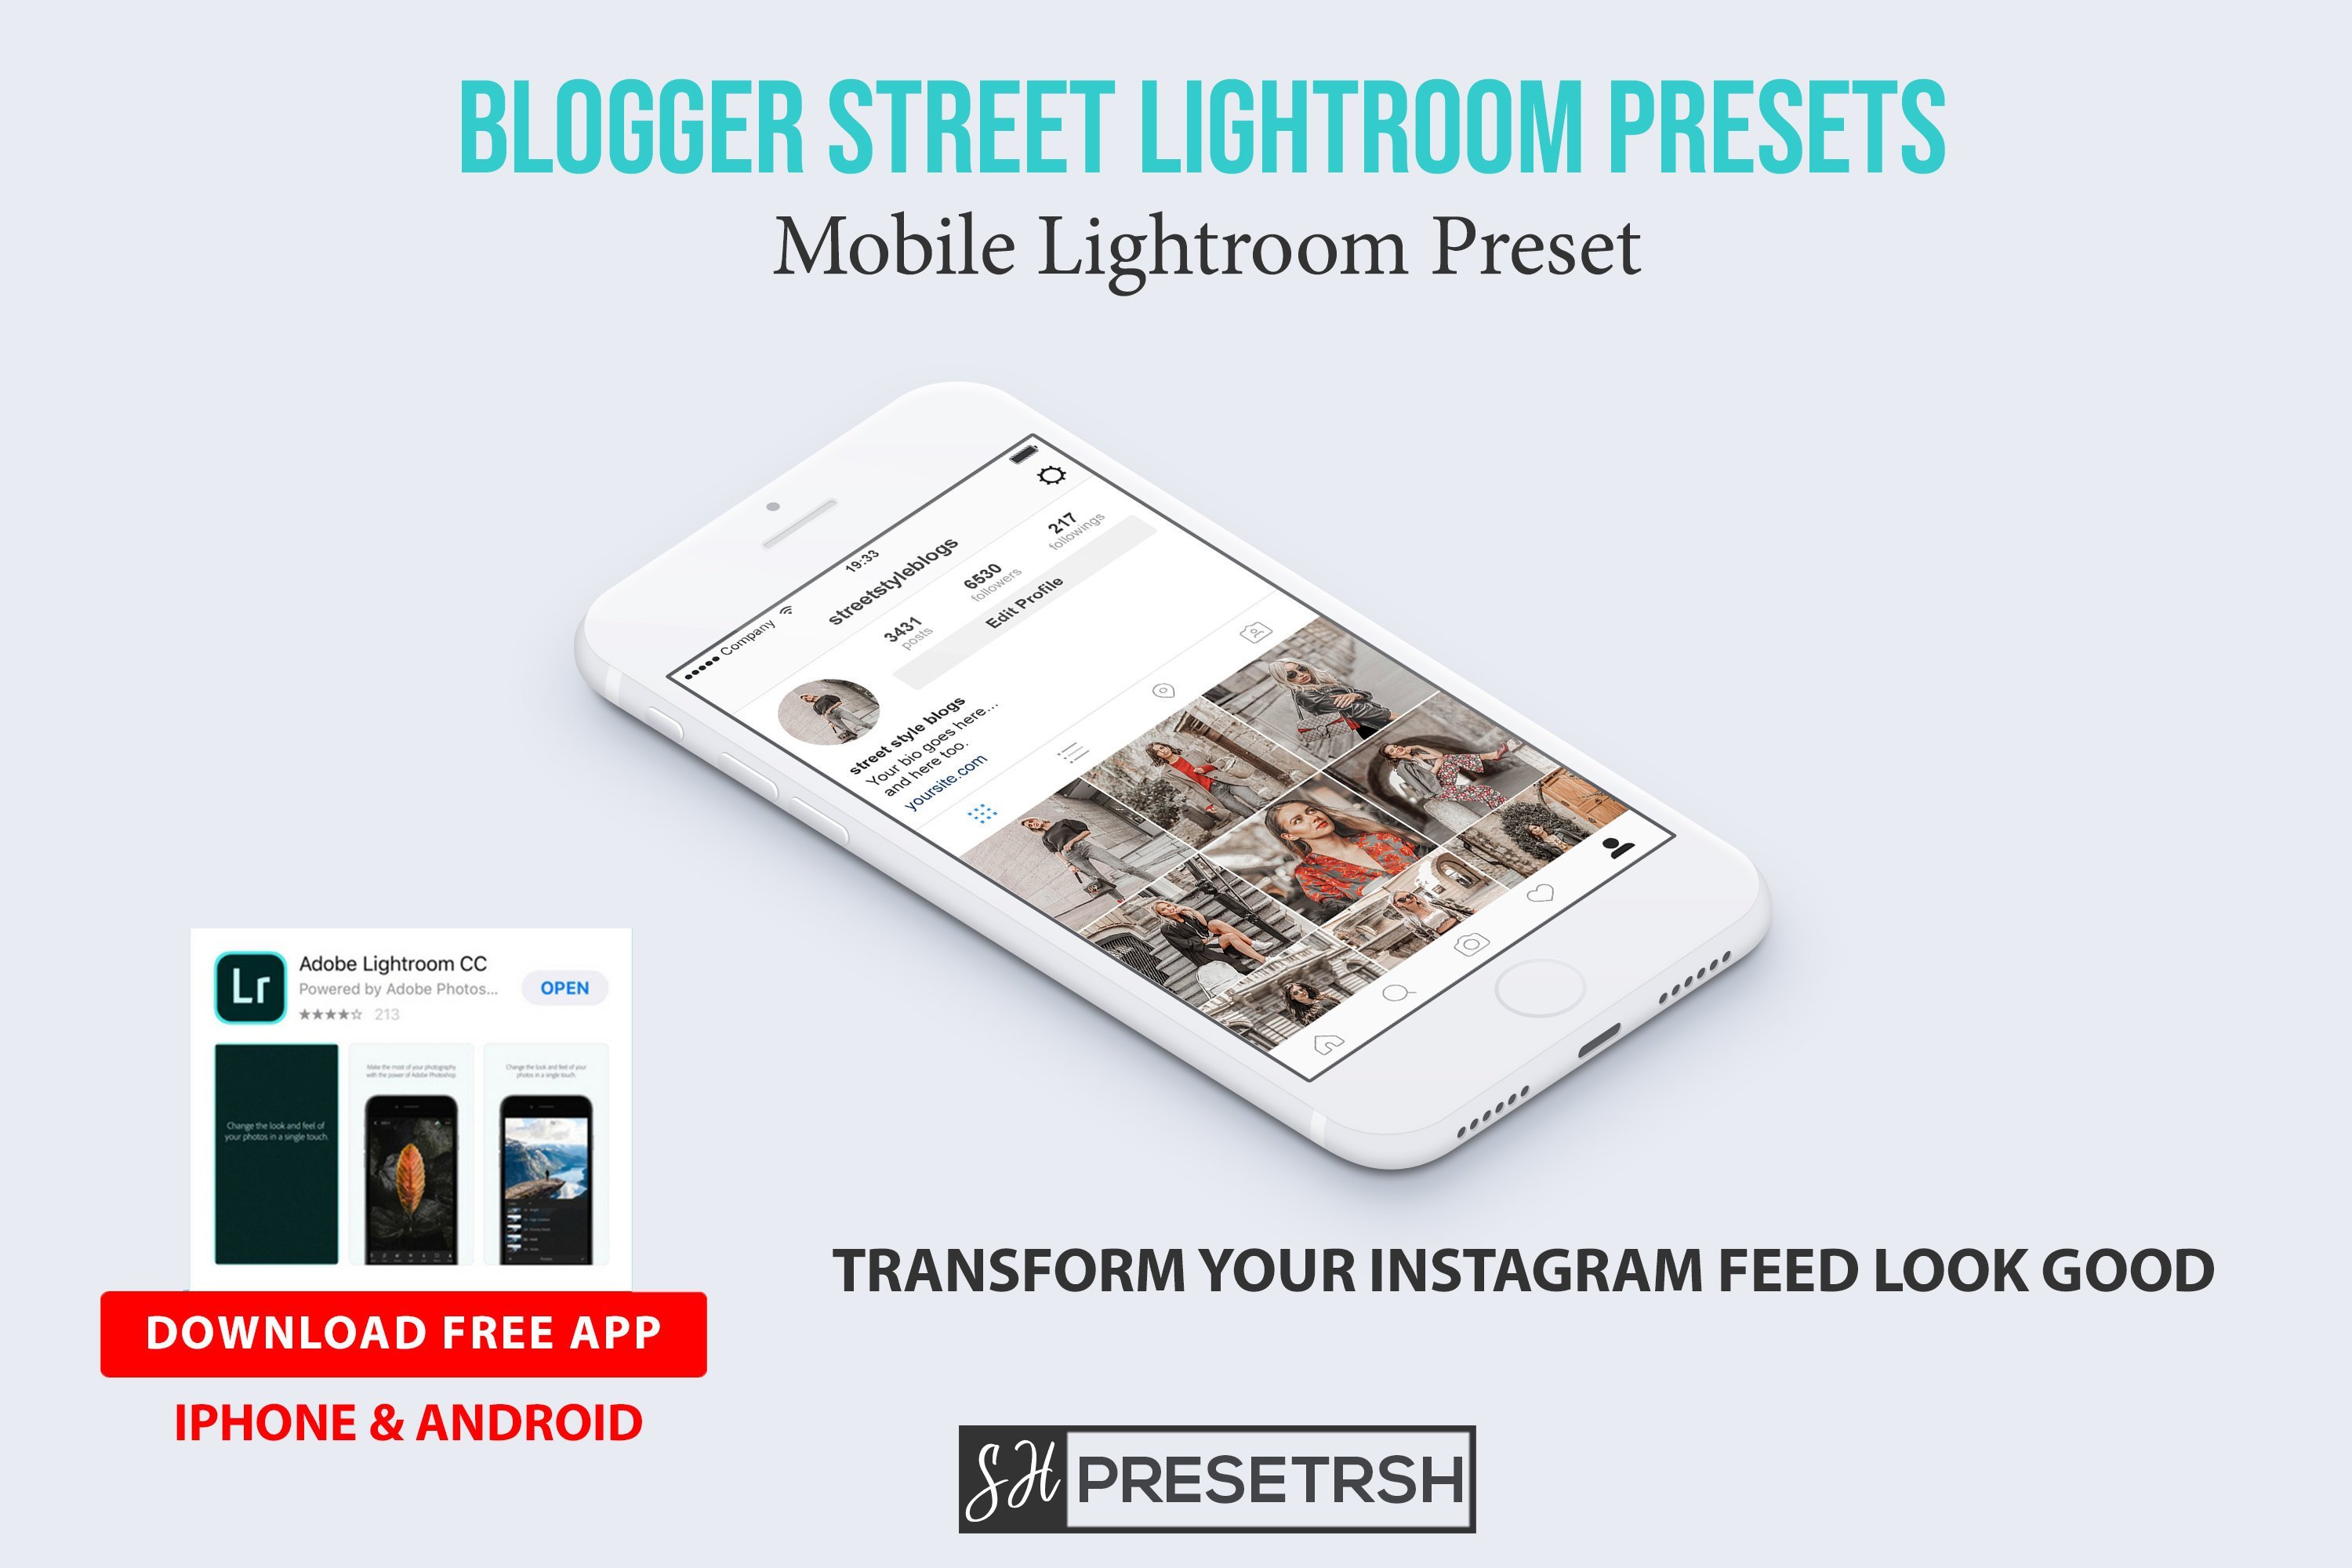 Blogger Street Lightroom Presetspreview image.